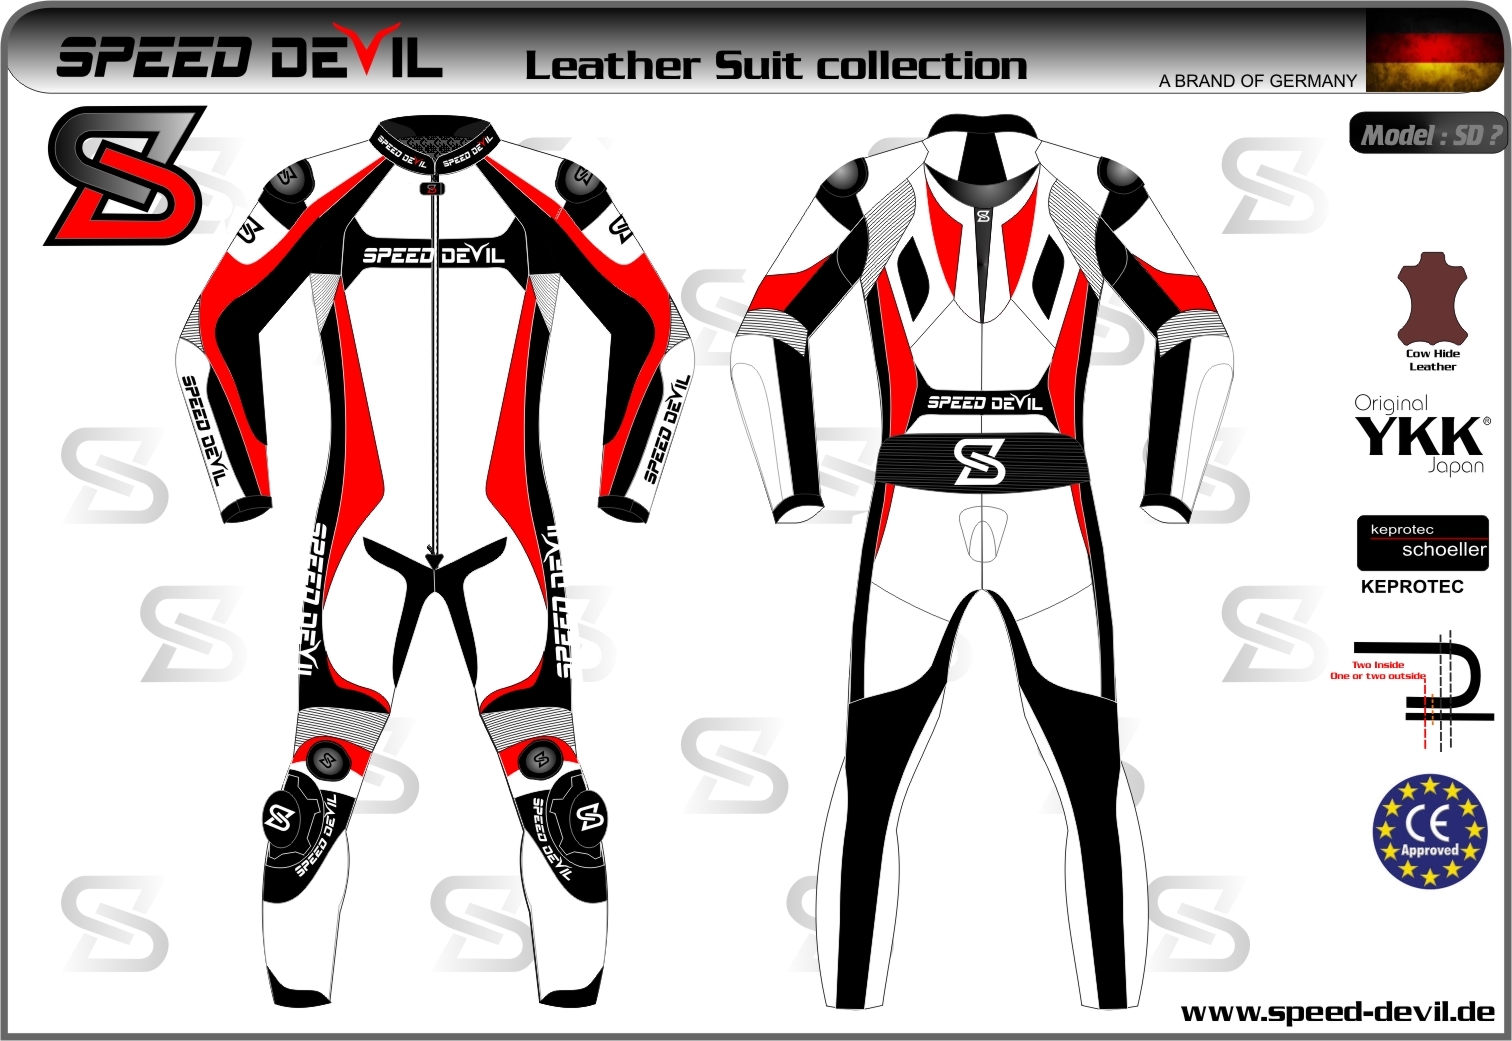 SD_suit_Design_1_-_2